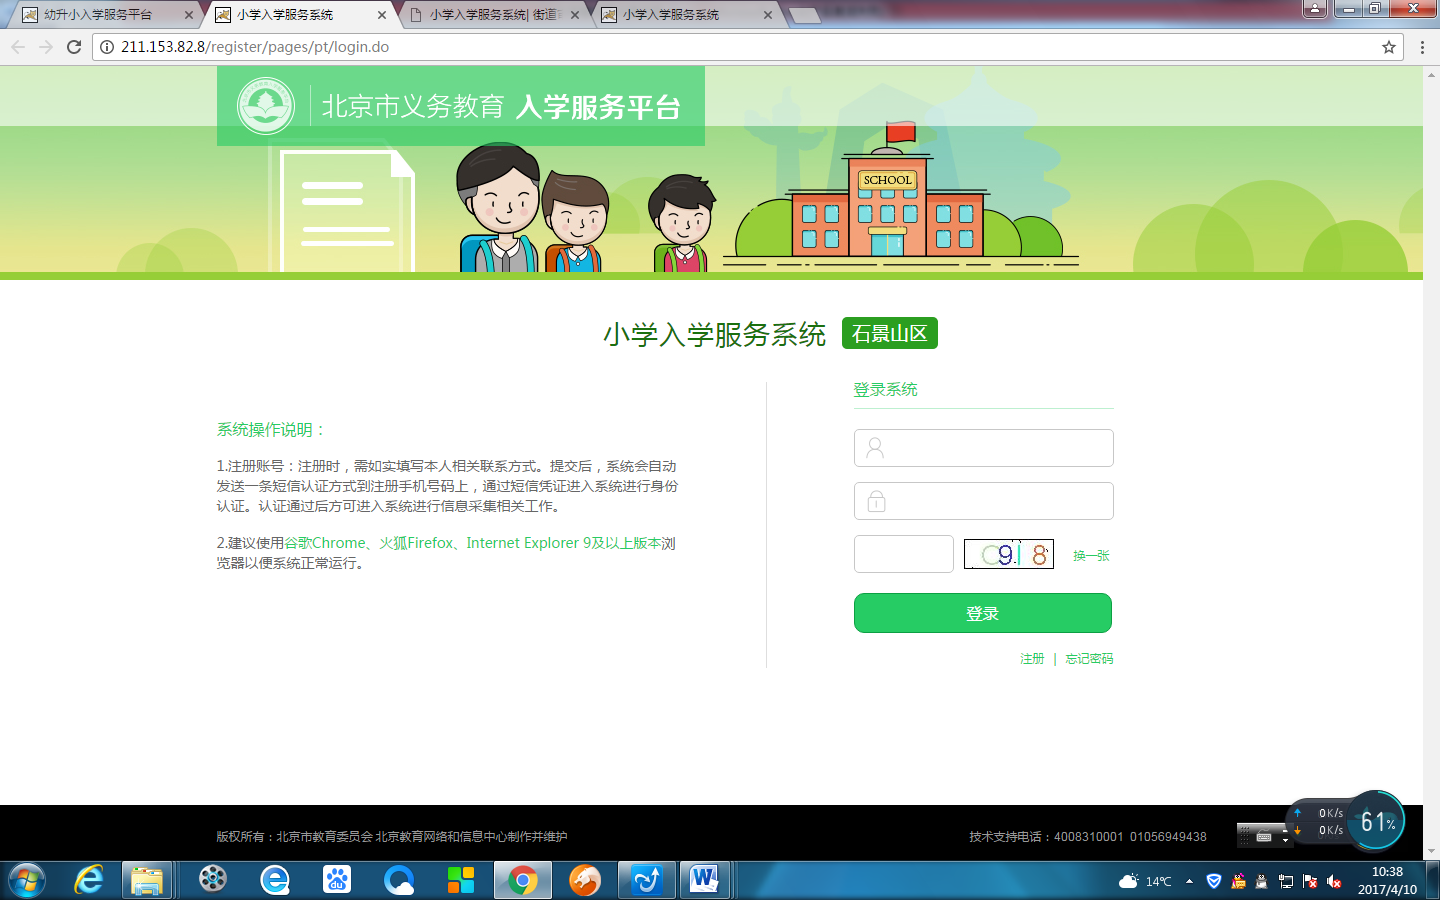 非北京市户籍适龄儿童入学信息采集流程图11